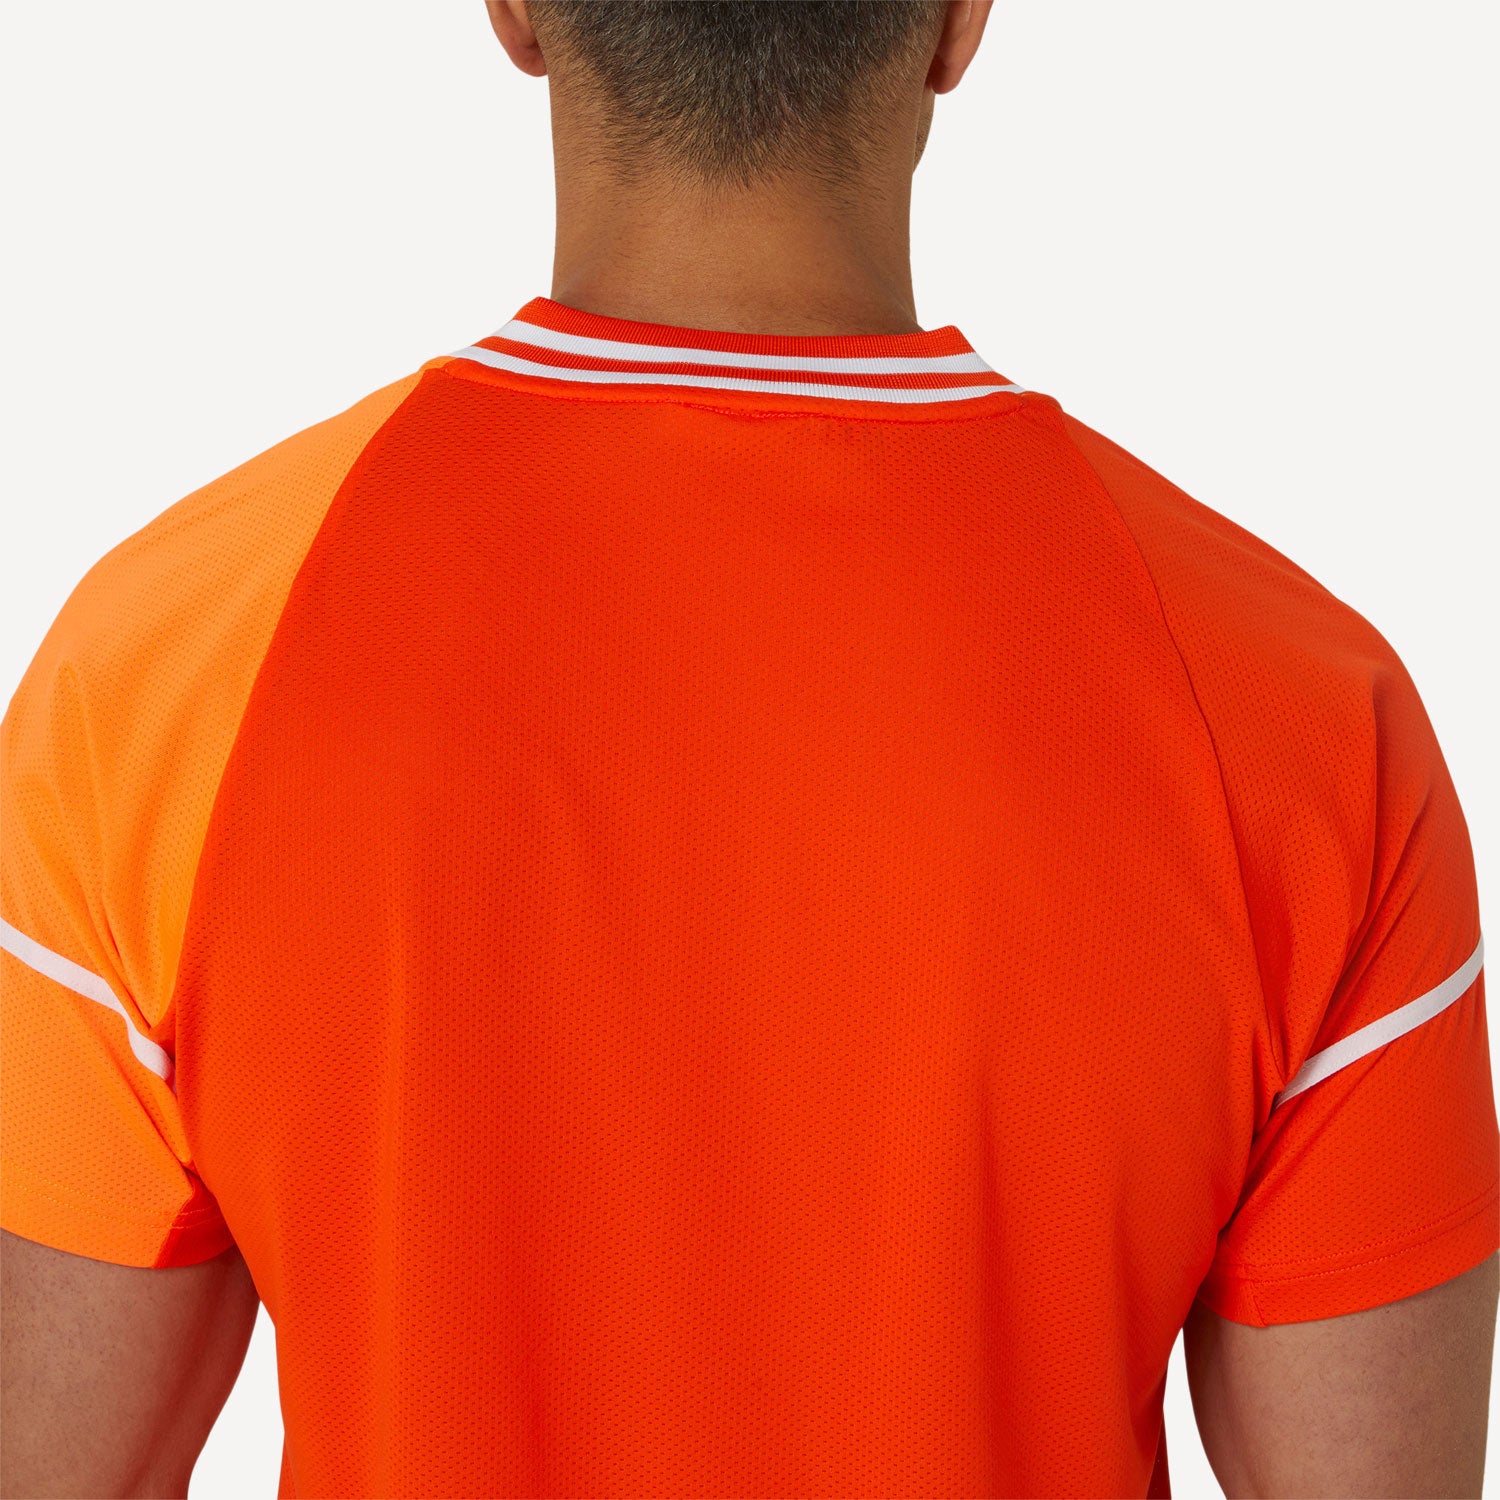 ASICS Match Men's Tennis Shirt - Orange (6)